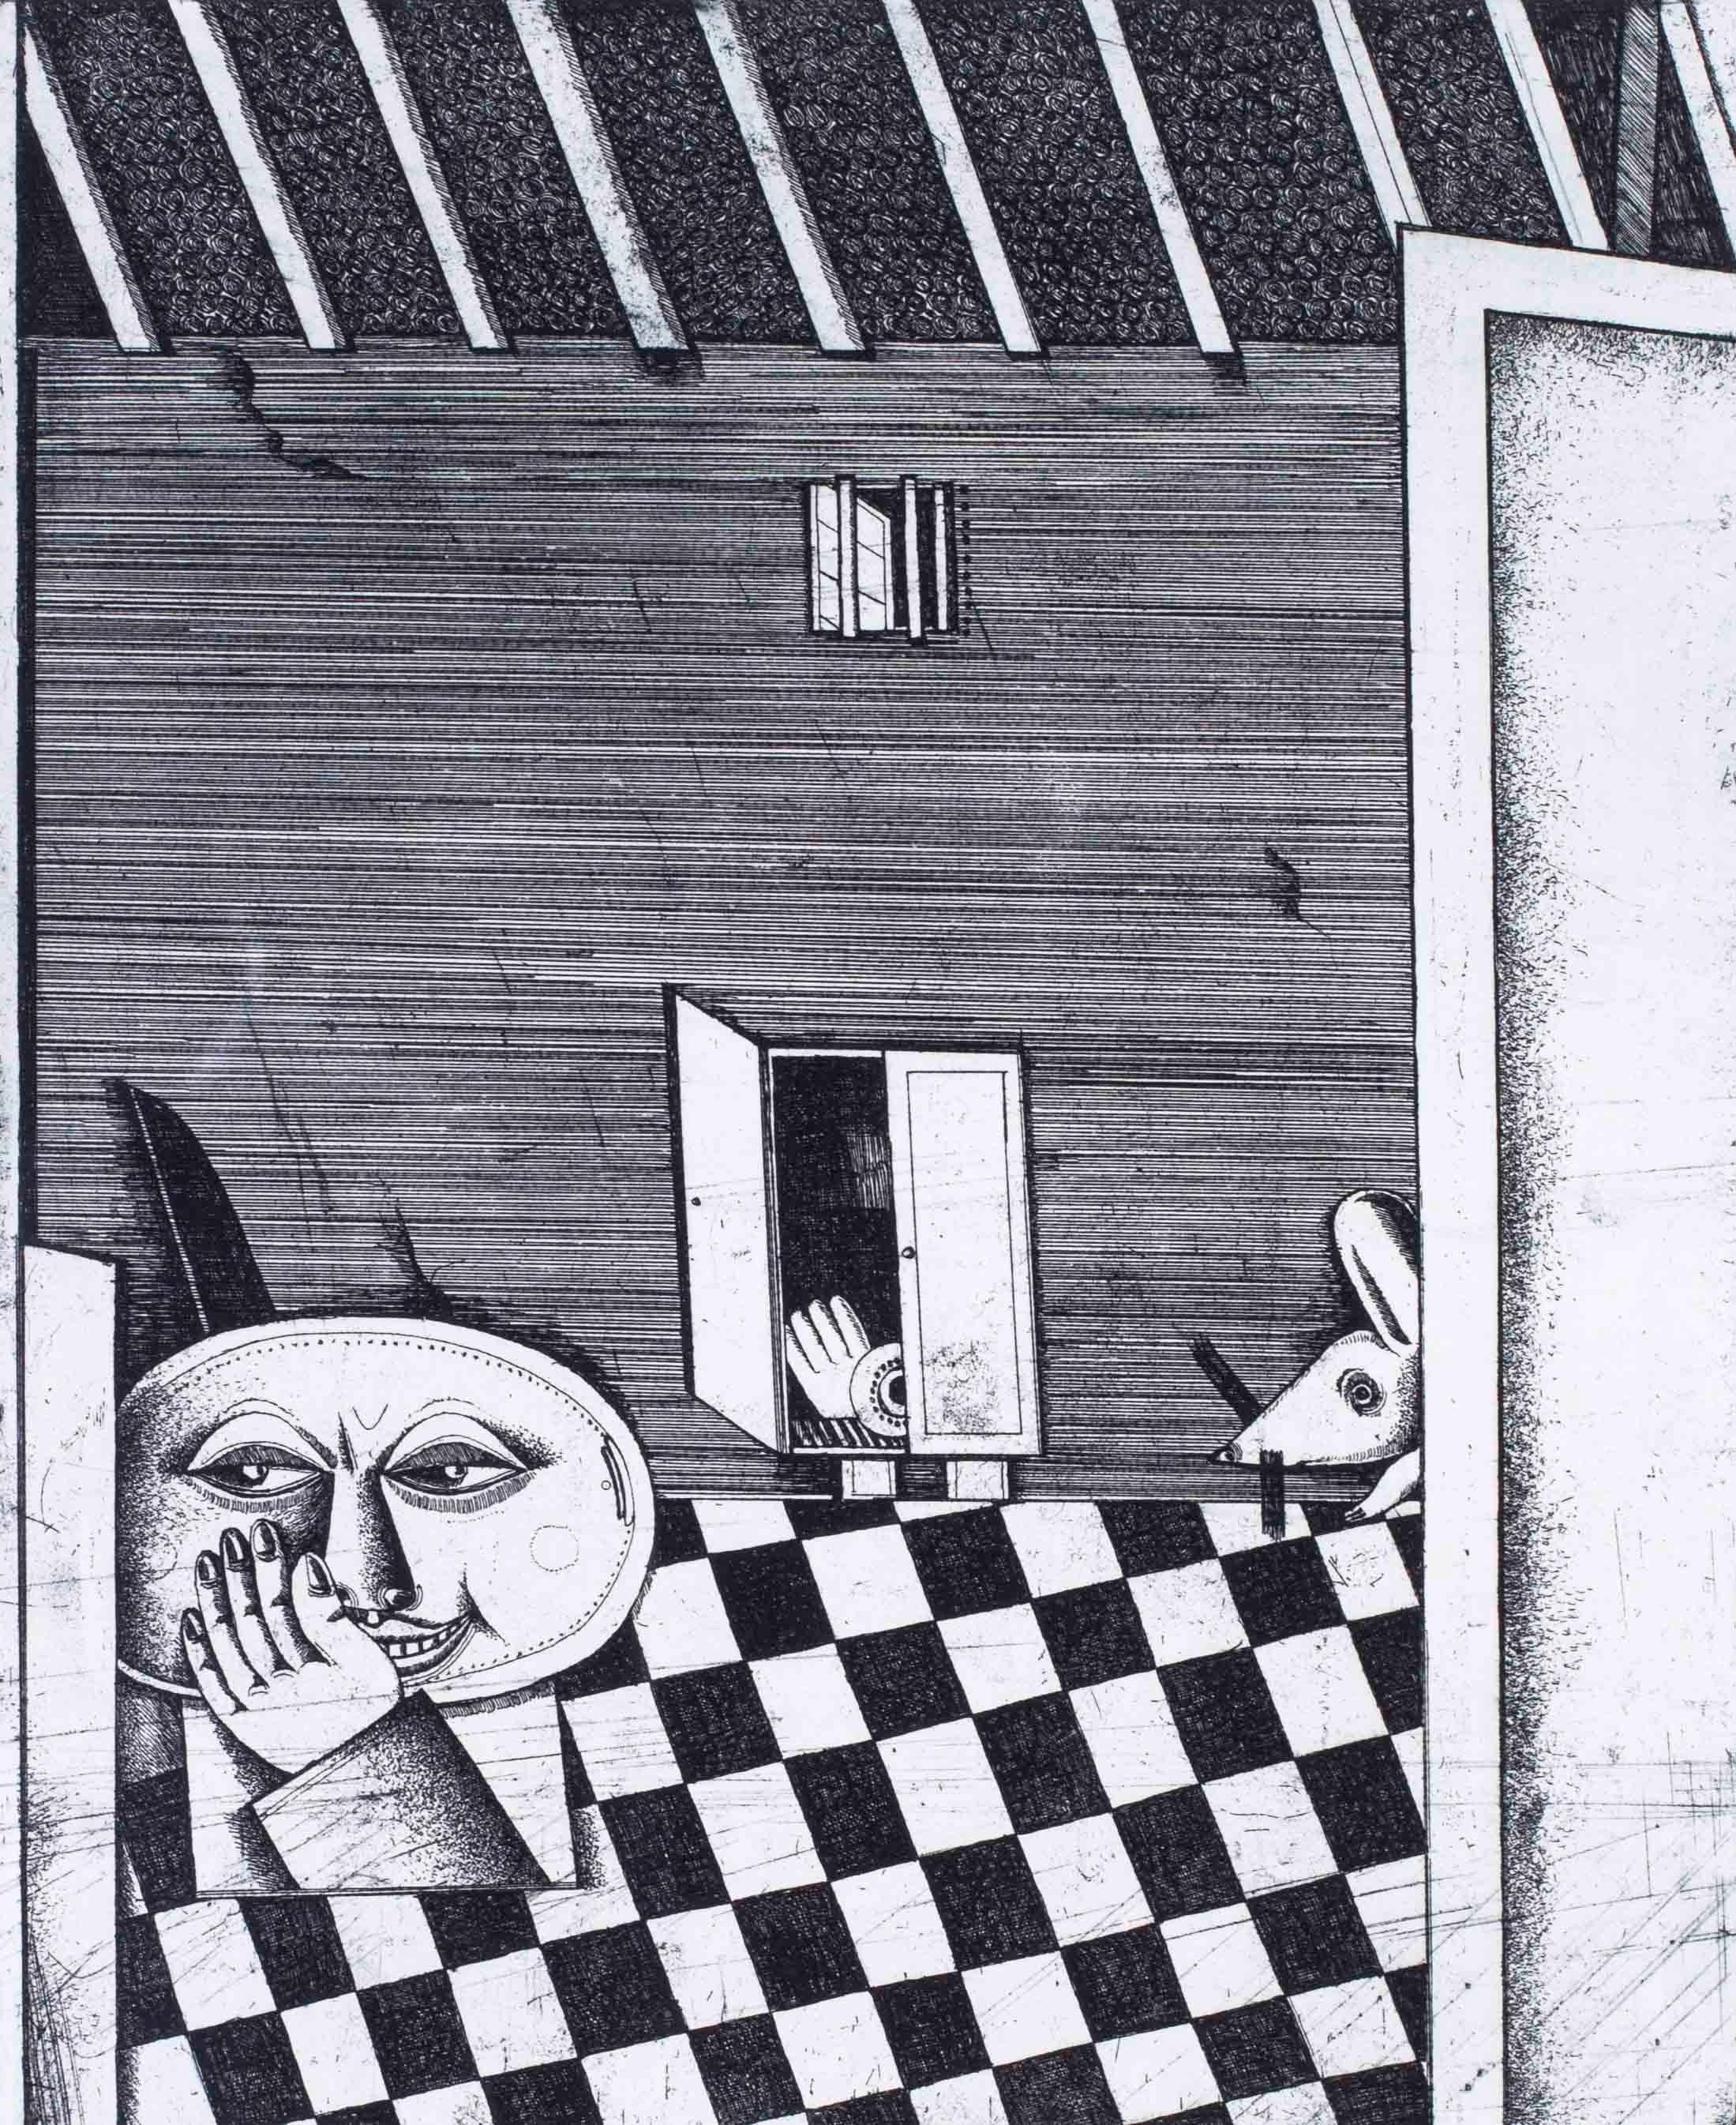 Surrealistische Schwarz-Weiß-Radierungen des deutschen Künstlers Christoph Muhil aus den 1970er Jahren  – Print von Unknown